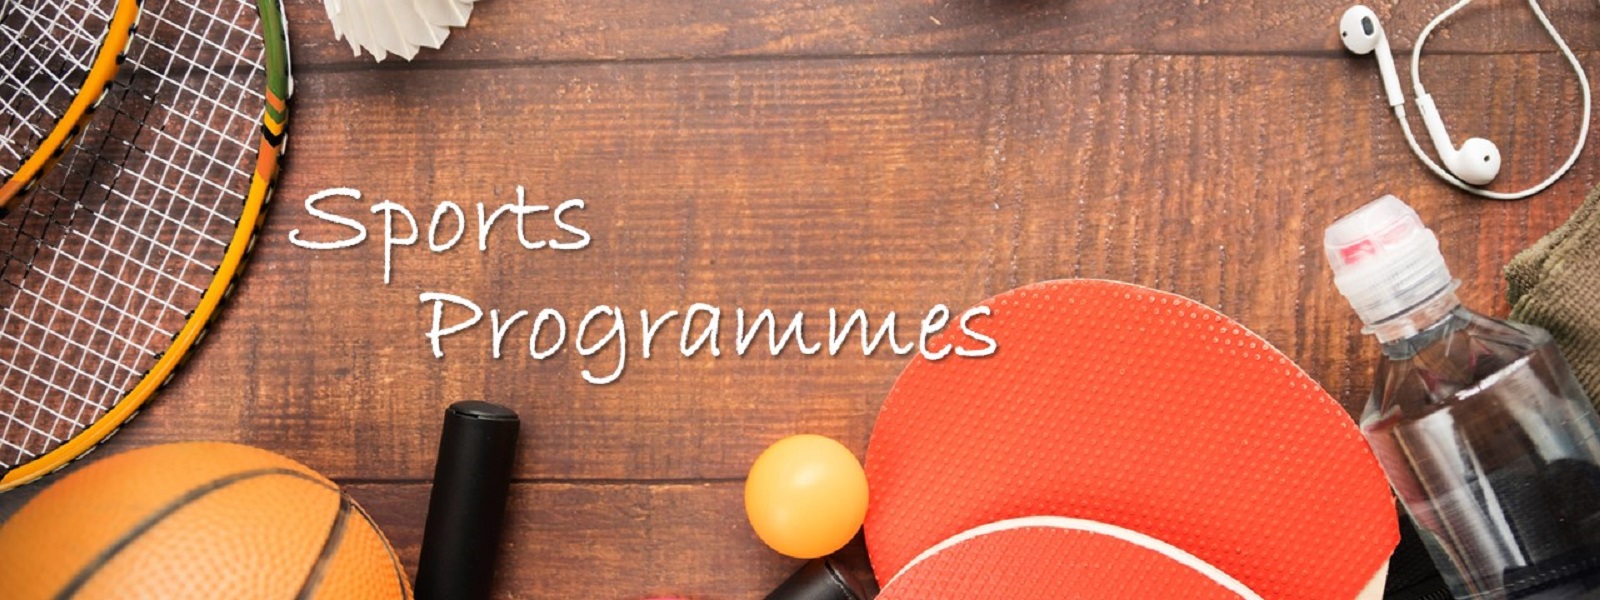 Sports Programmes